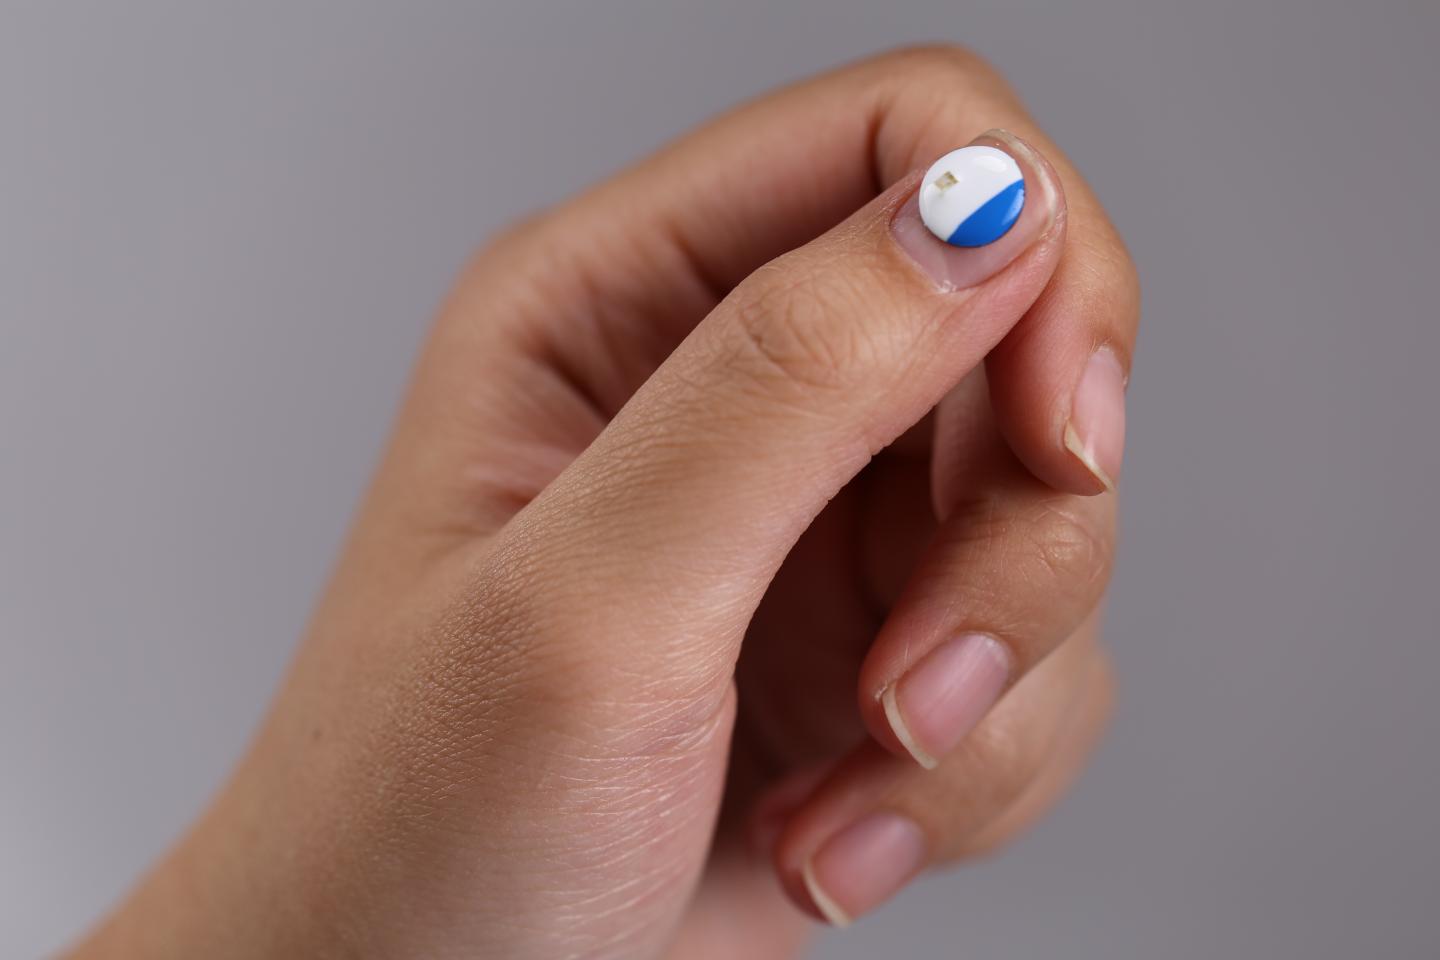 This is a UVA sunlight skin sensor on fingernail. Courtesy of Northwestern University.